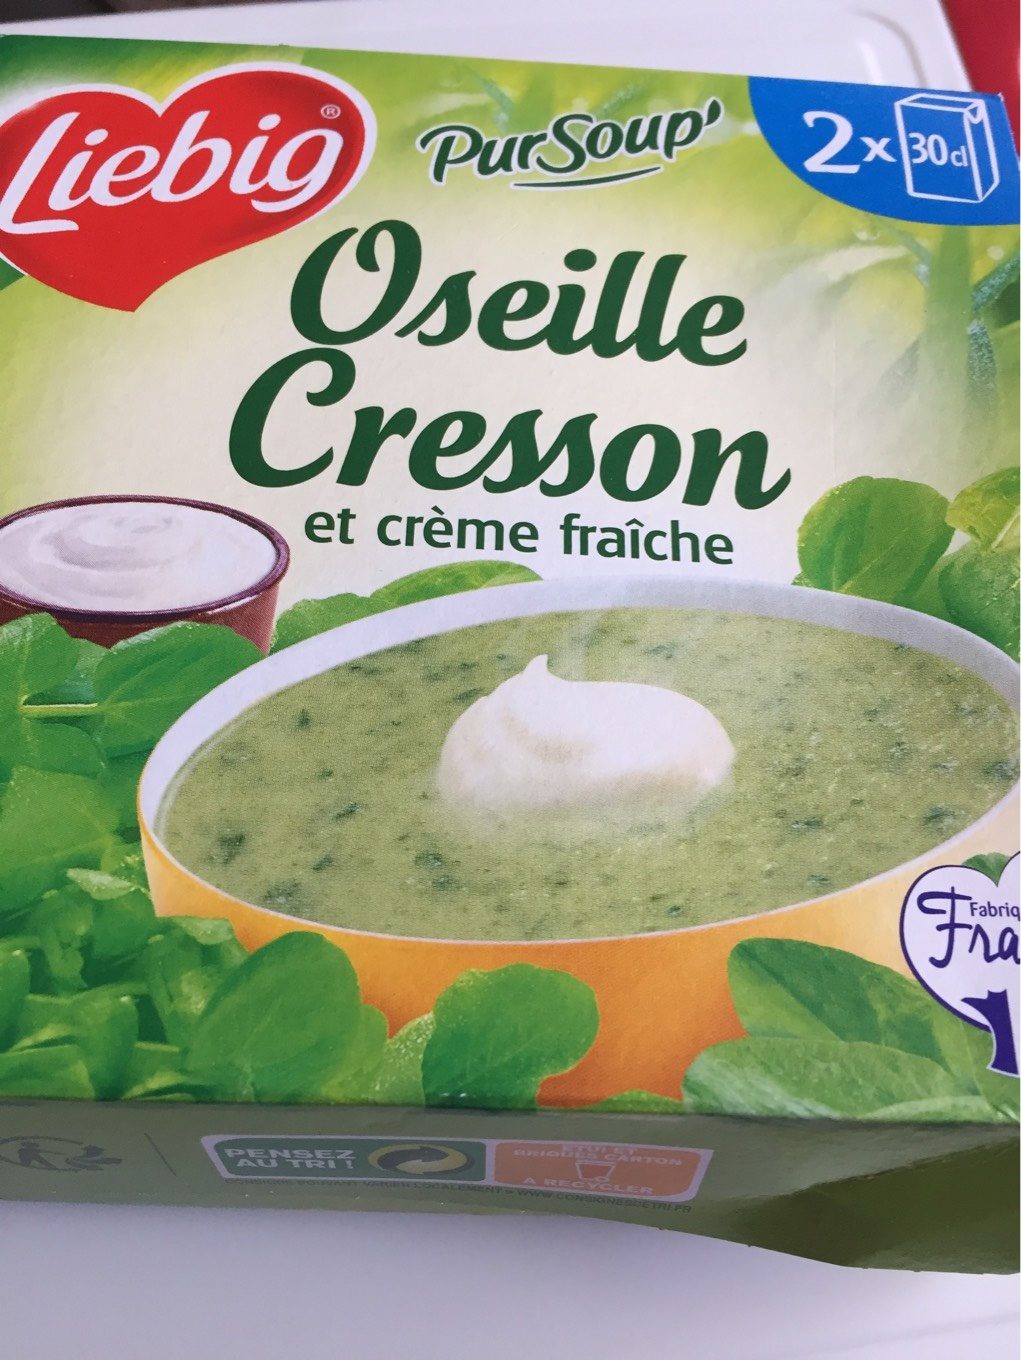 PurSoup' Oseille Cresson et crème fraîche - Producto - fr